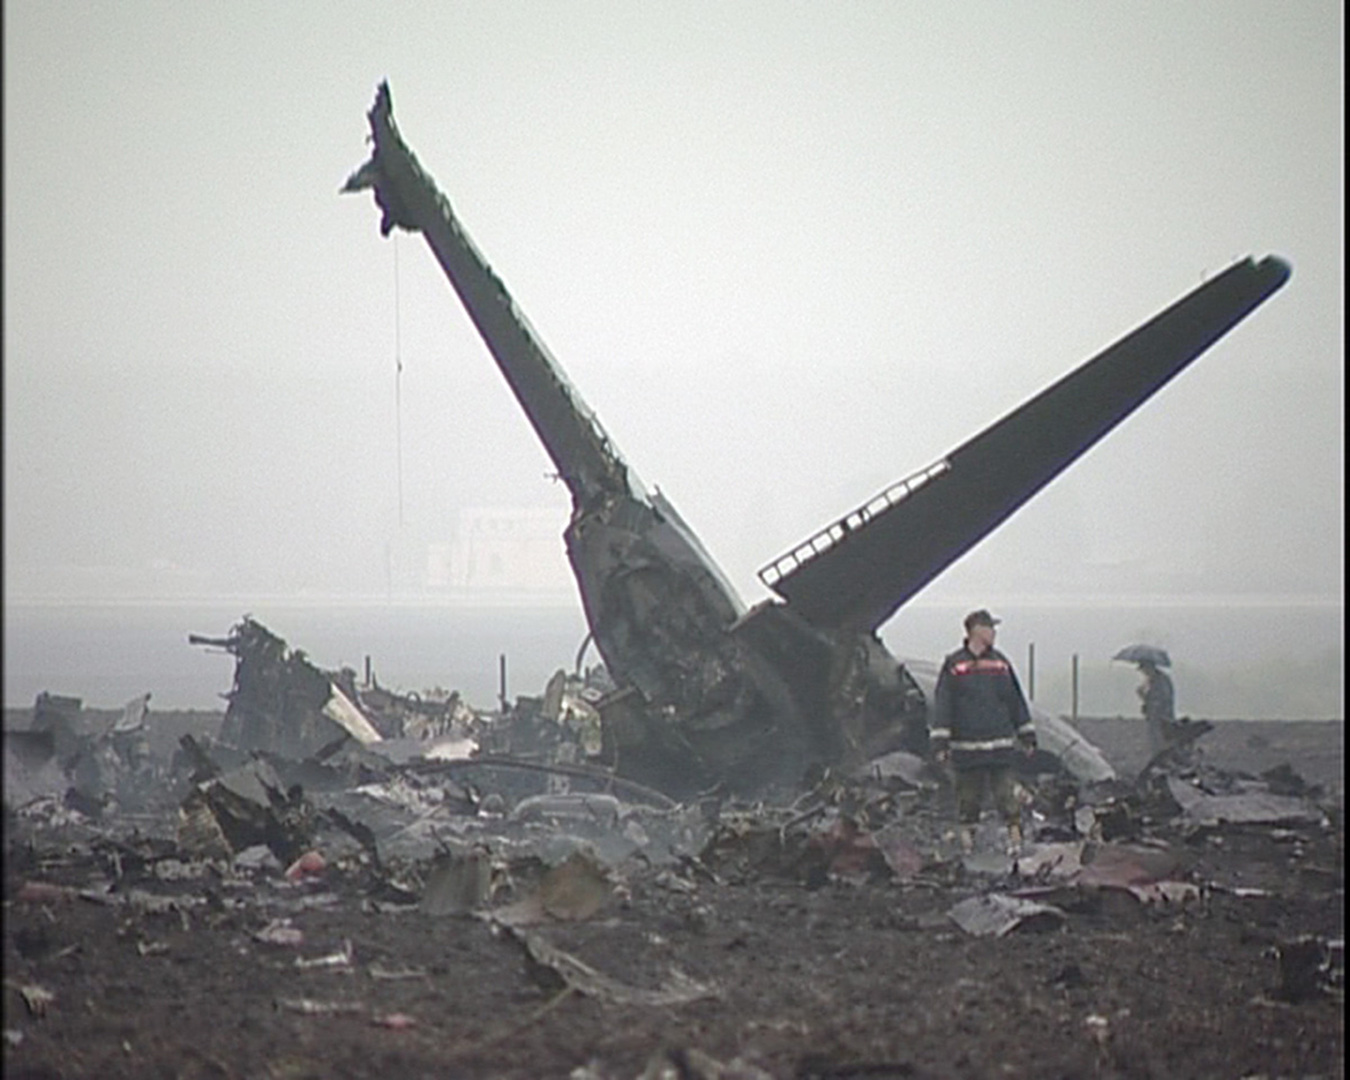 مقتل 5 أشخاص جراء تحطم طائرة في الشرق الأقصى الروسي (صور)